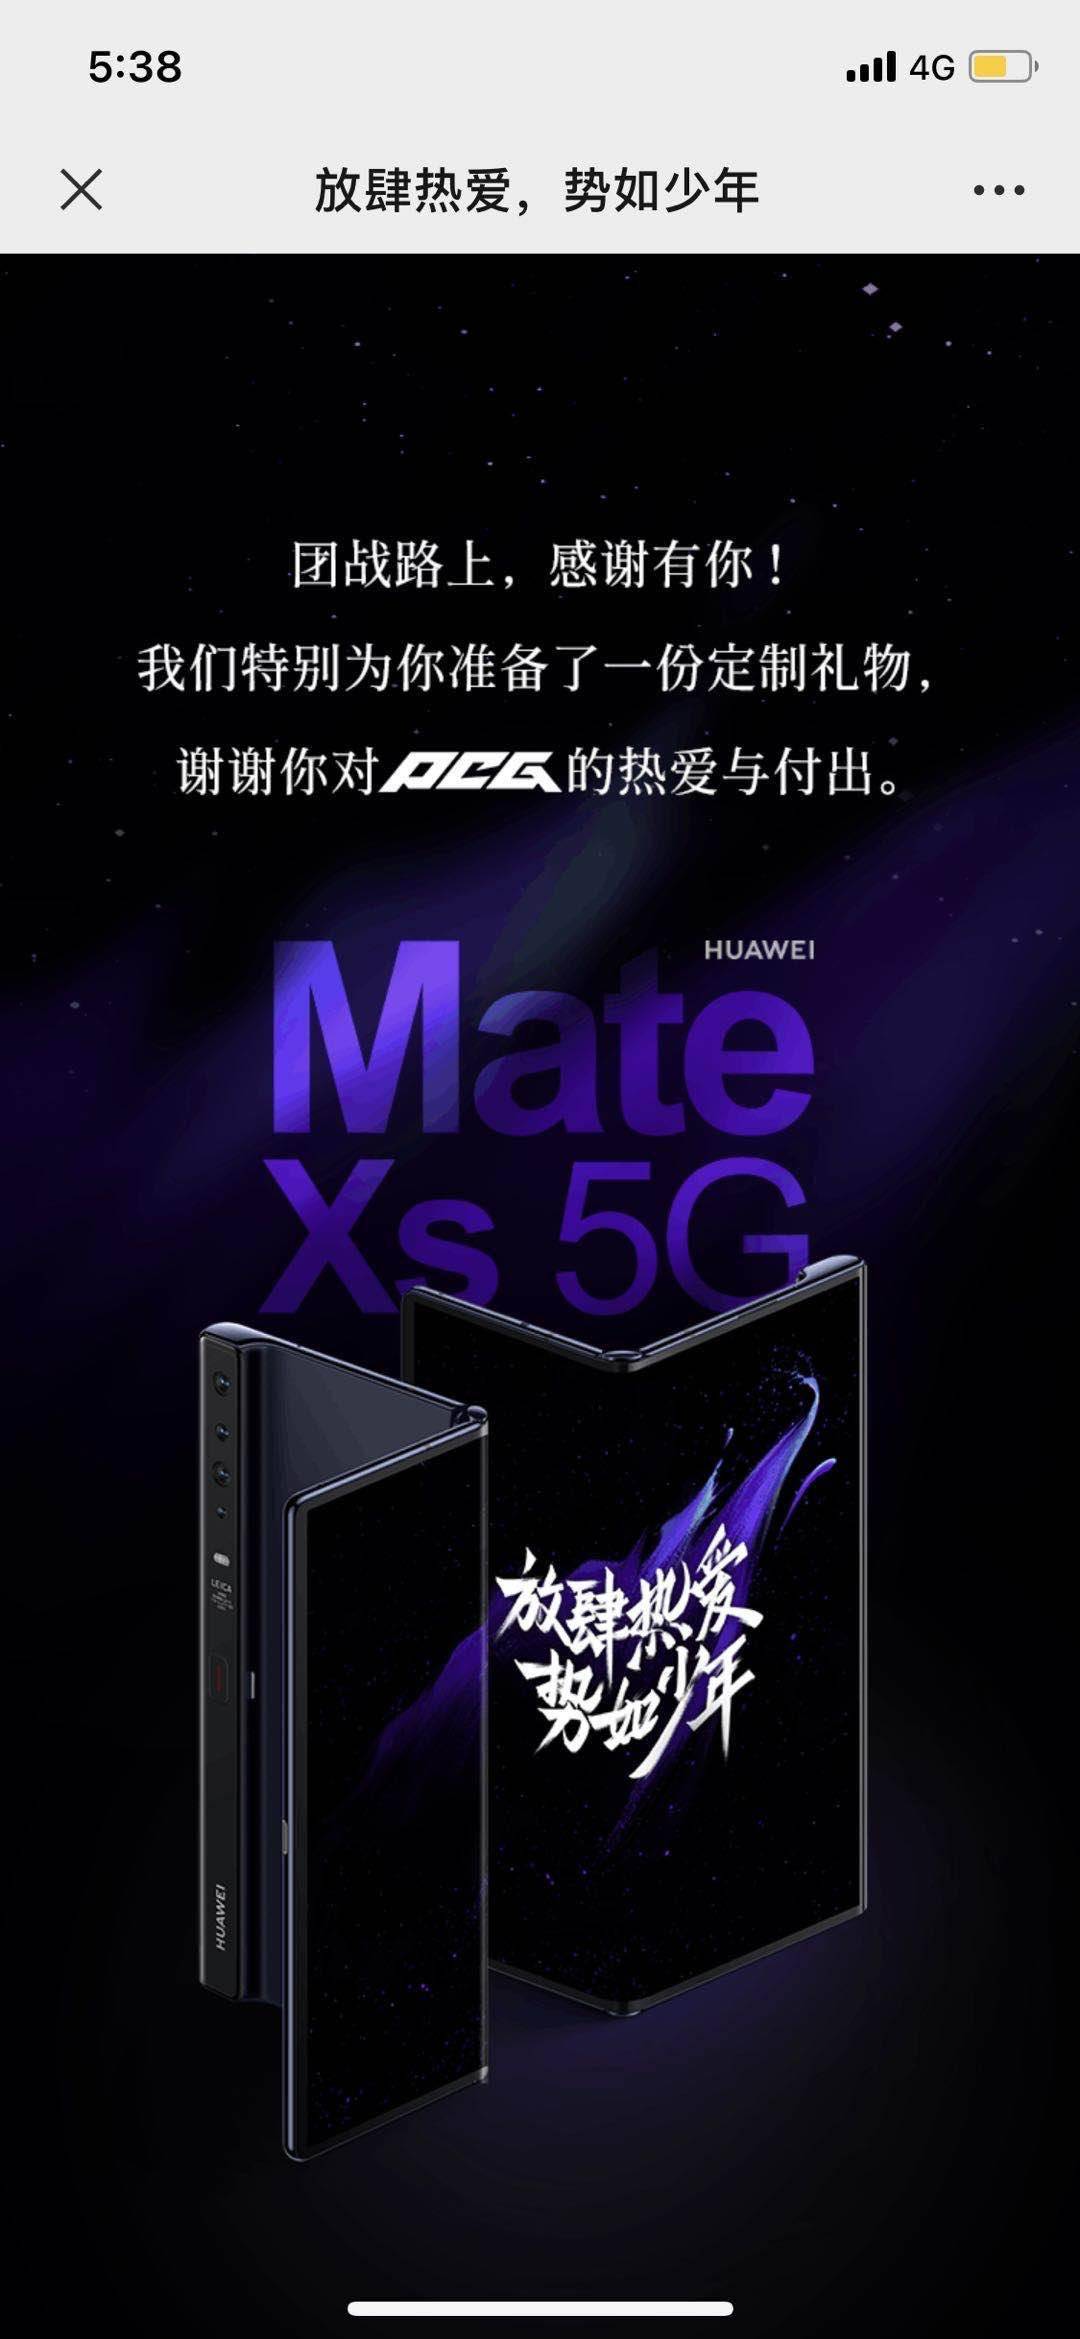 騰訊 PCG 部門中秋禮物曝光：一臺華為 Mate Xs 5G 手機 科技 第1張